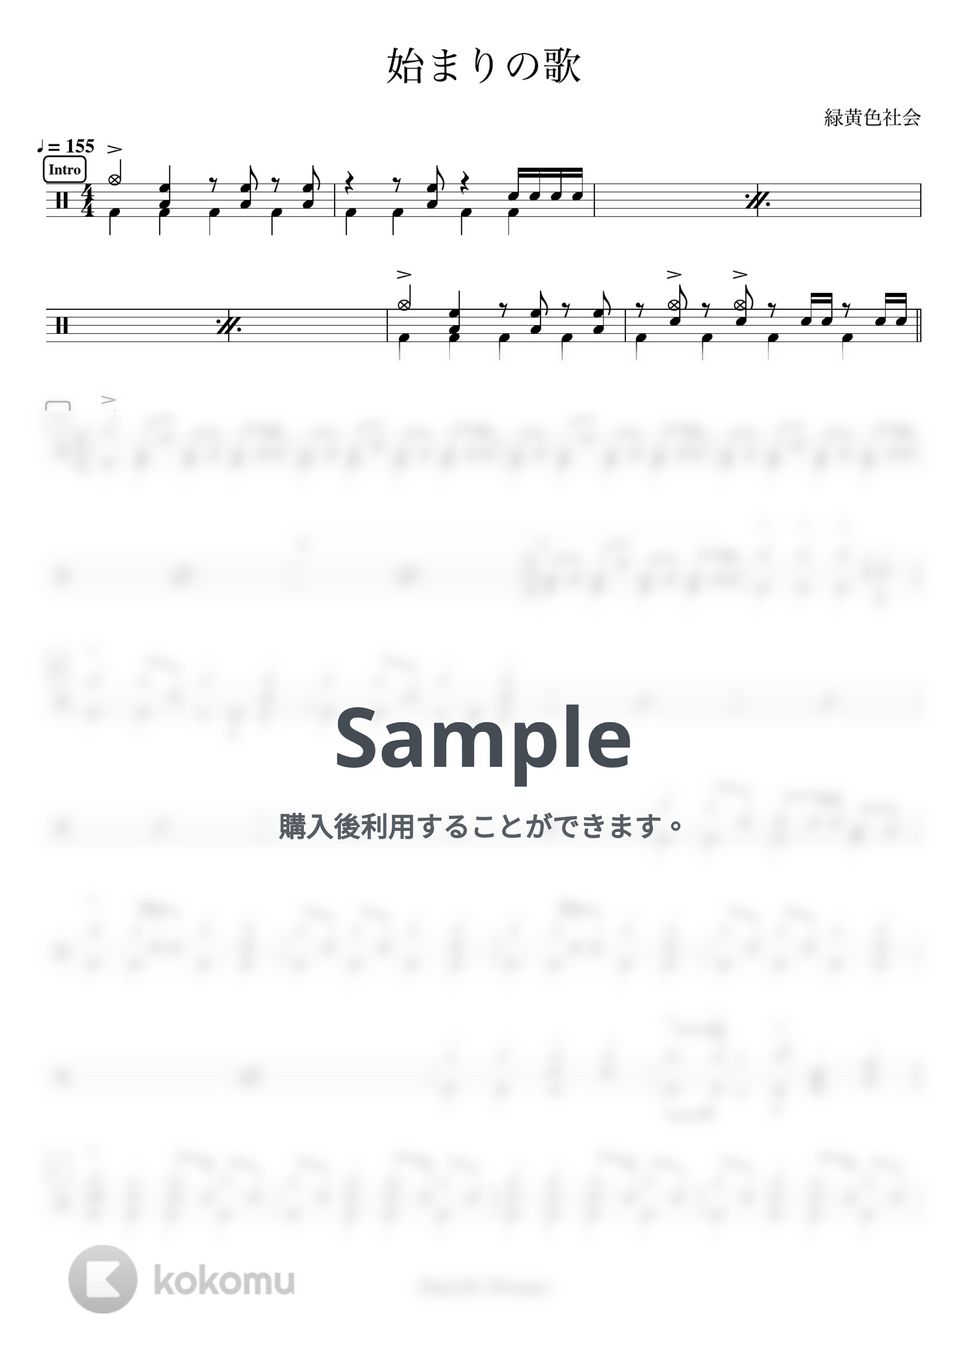 緑黄色社会 - 始まりの歌 by Daichi Drums